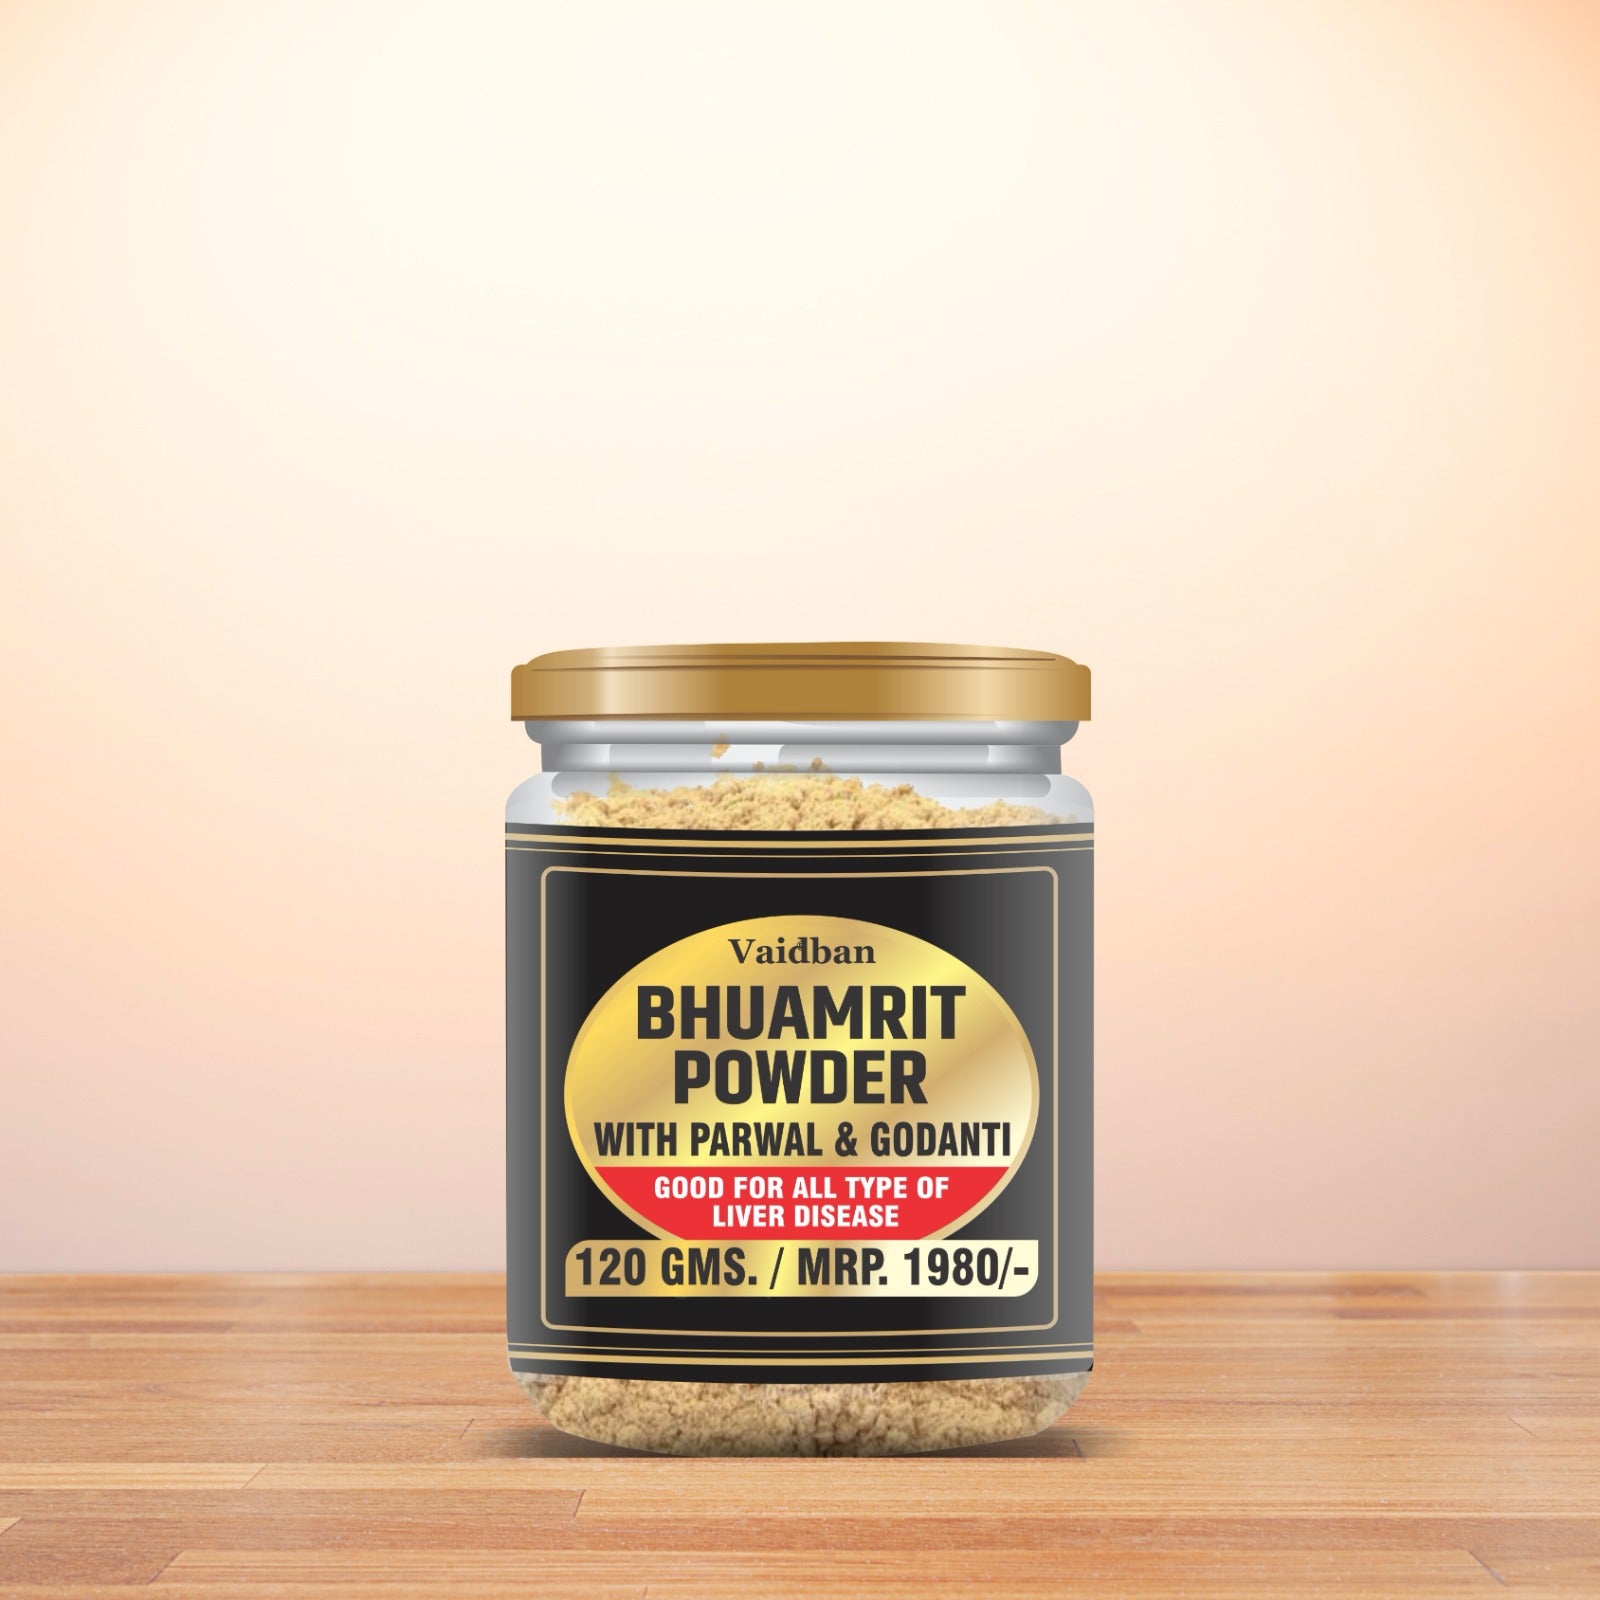 Bhuamrit powder